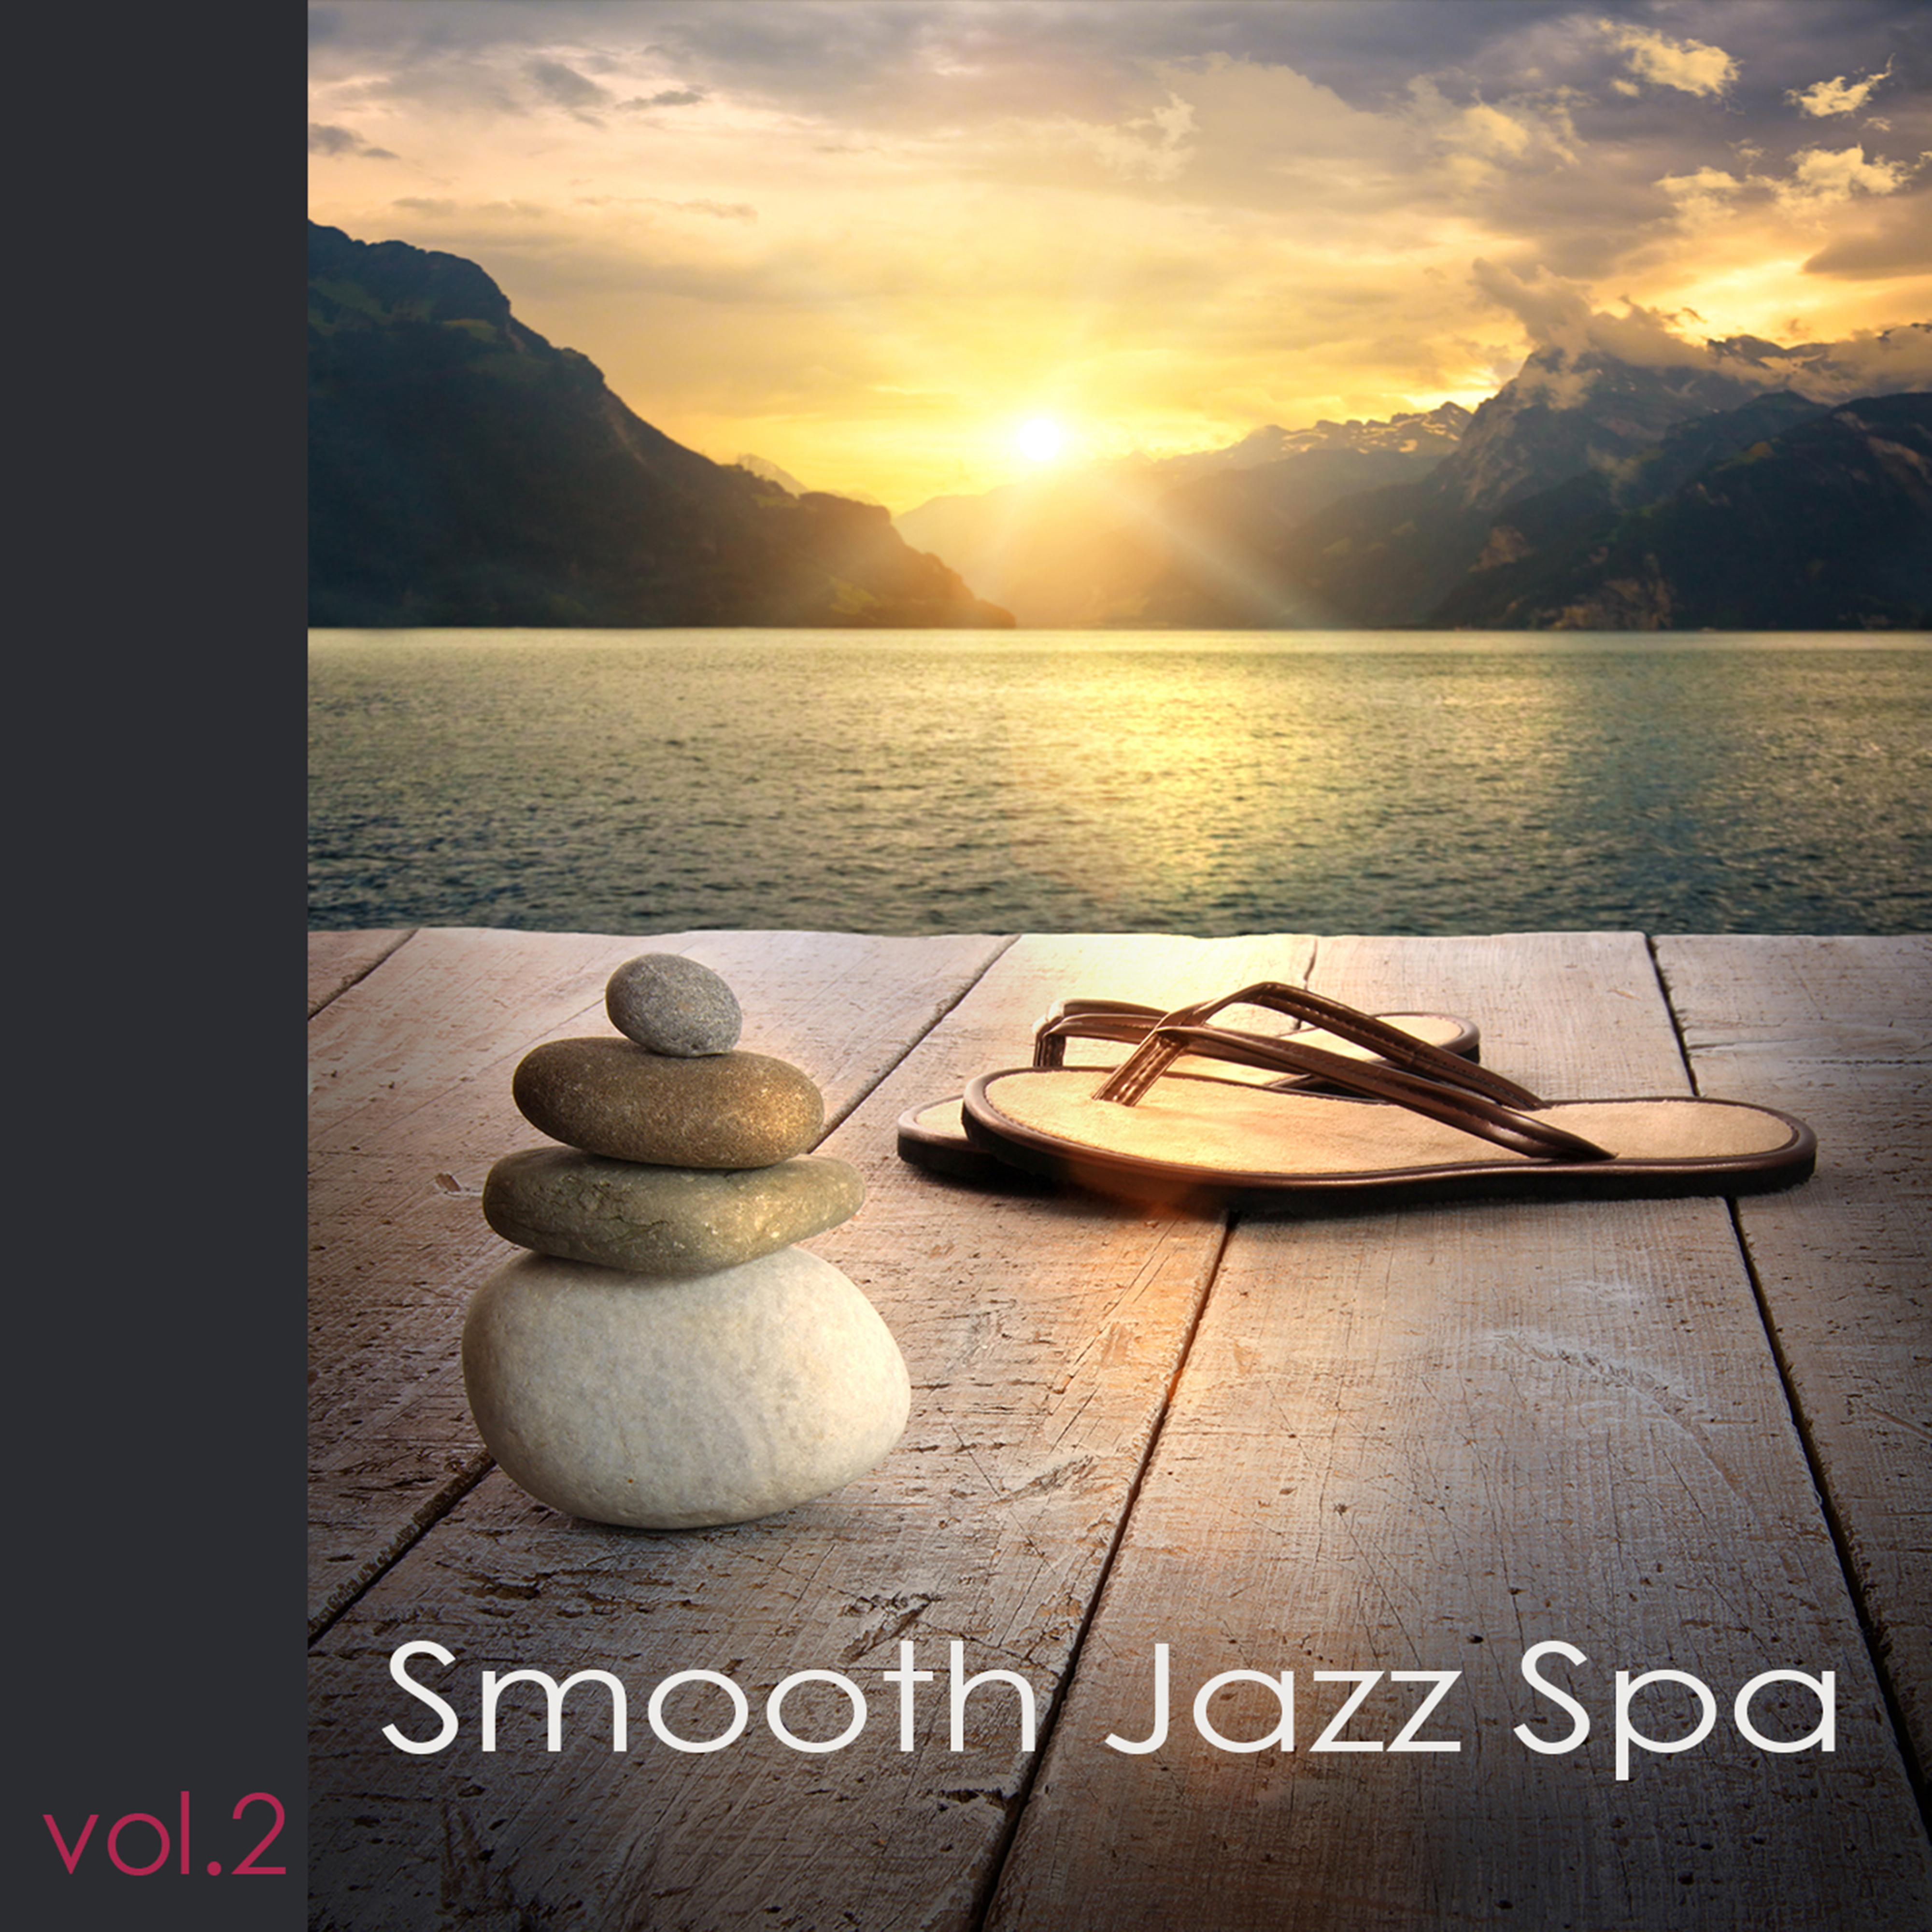 Smooth Jazz Spa, Vol. 2: Spa musique, coffret bien-être, musique d'ambiance, soft jazz, smooth music, musique romantique, détente